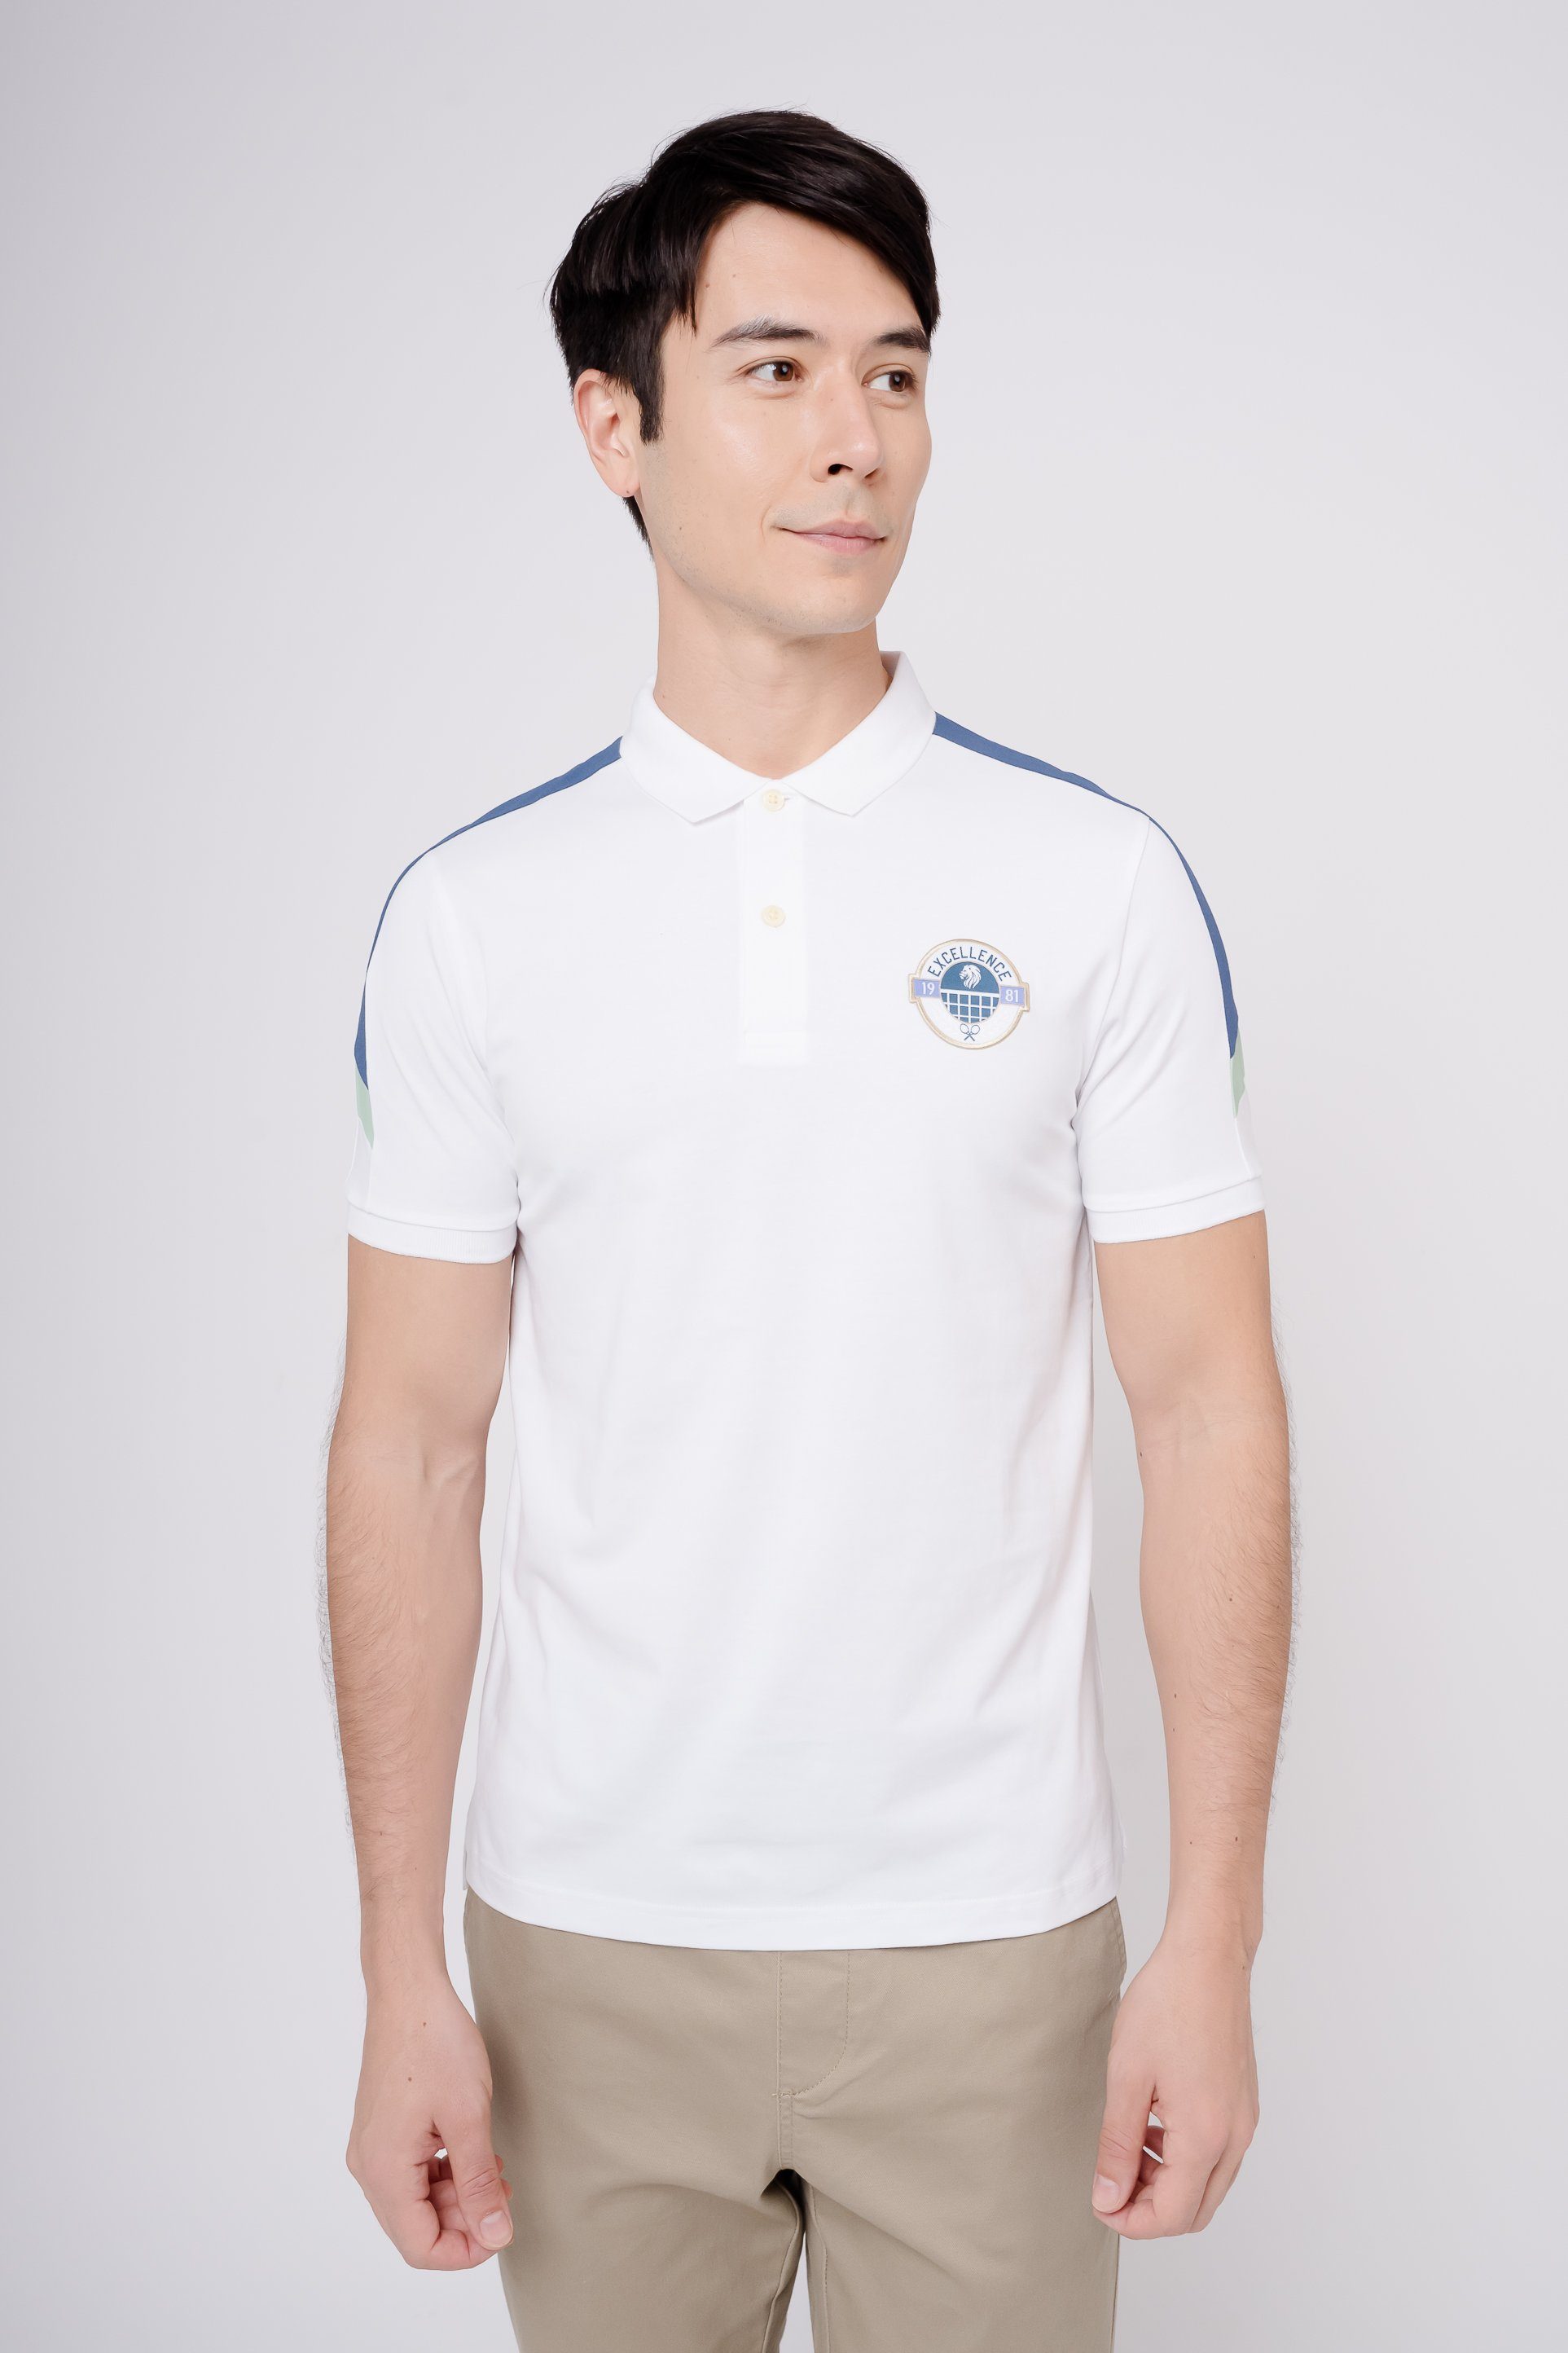 mit weiß-blau Poloshirt Quick-Dry-Technologie GIORDANO Sorona